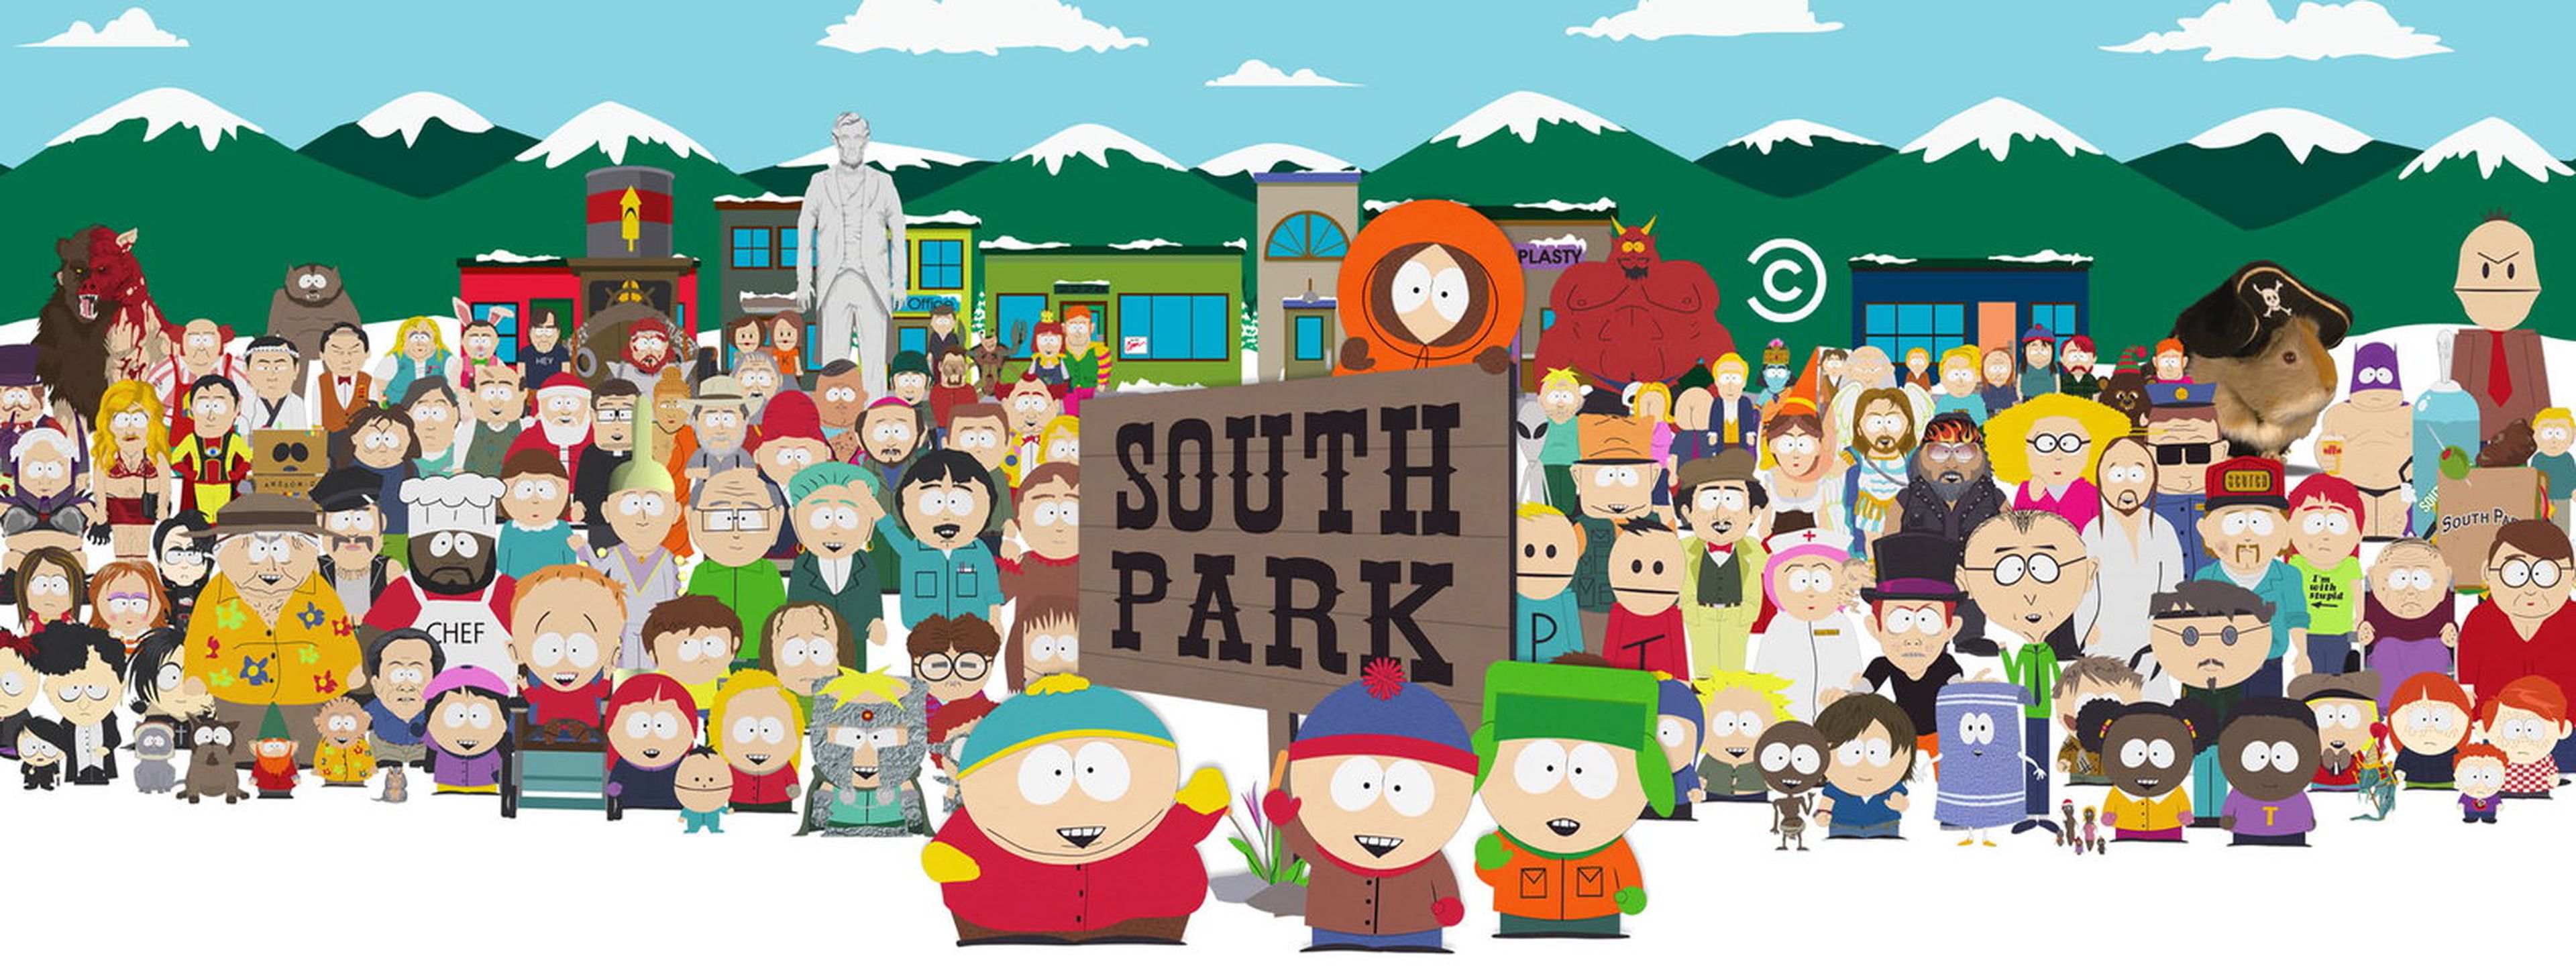 South Park mejores episodios